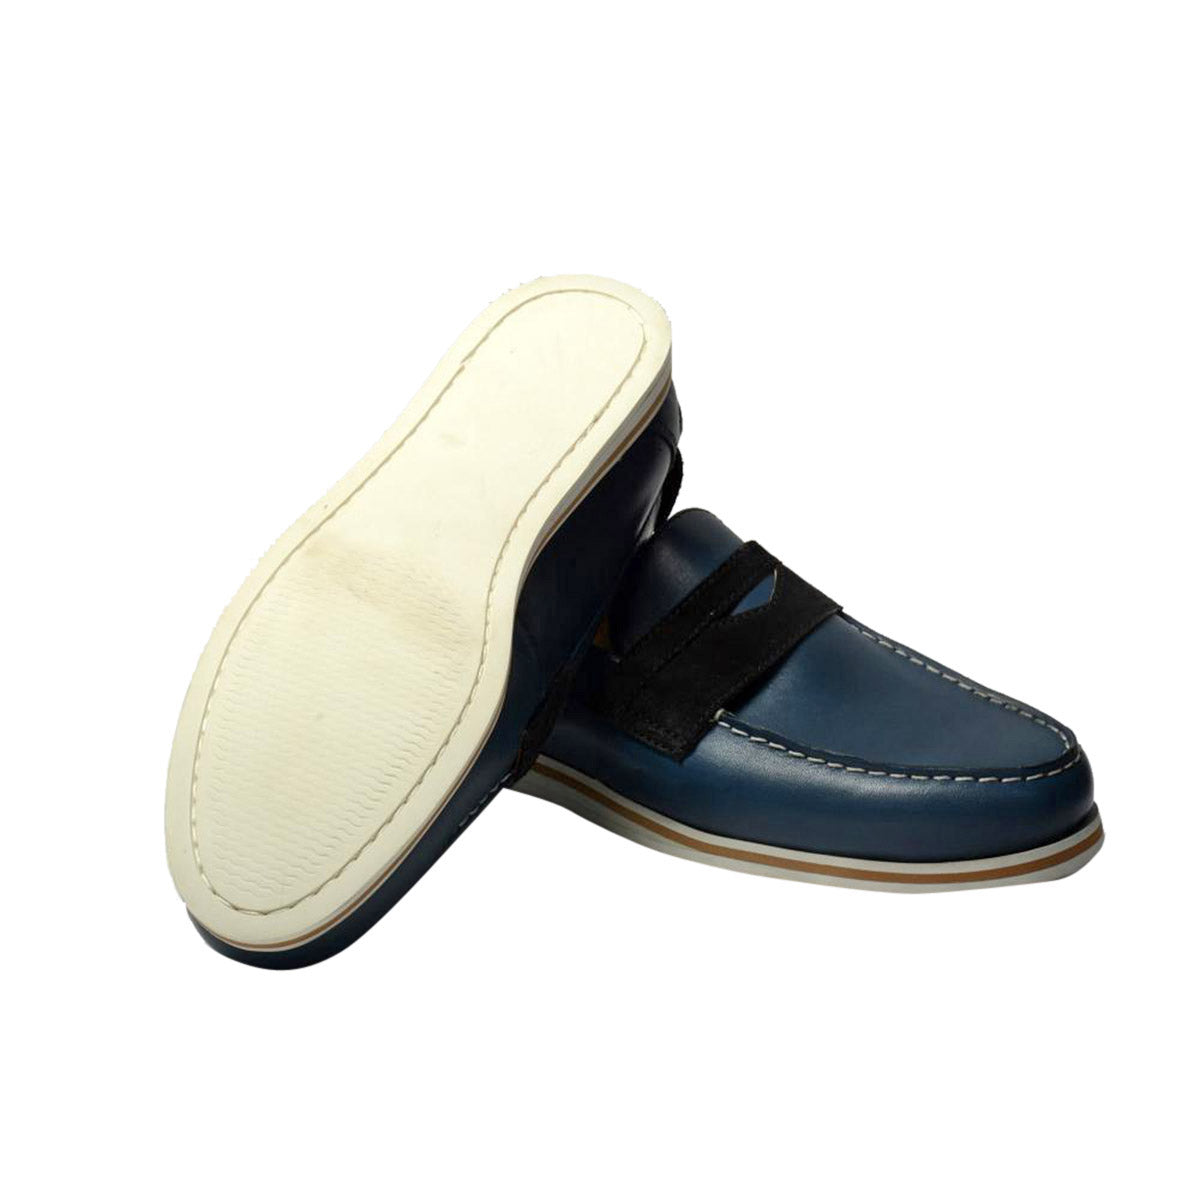 Men Leather Casual Loafers ǀ OAK 6312